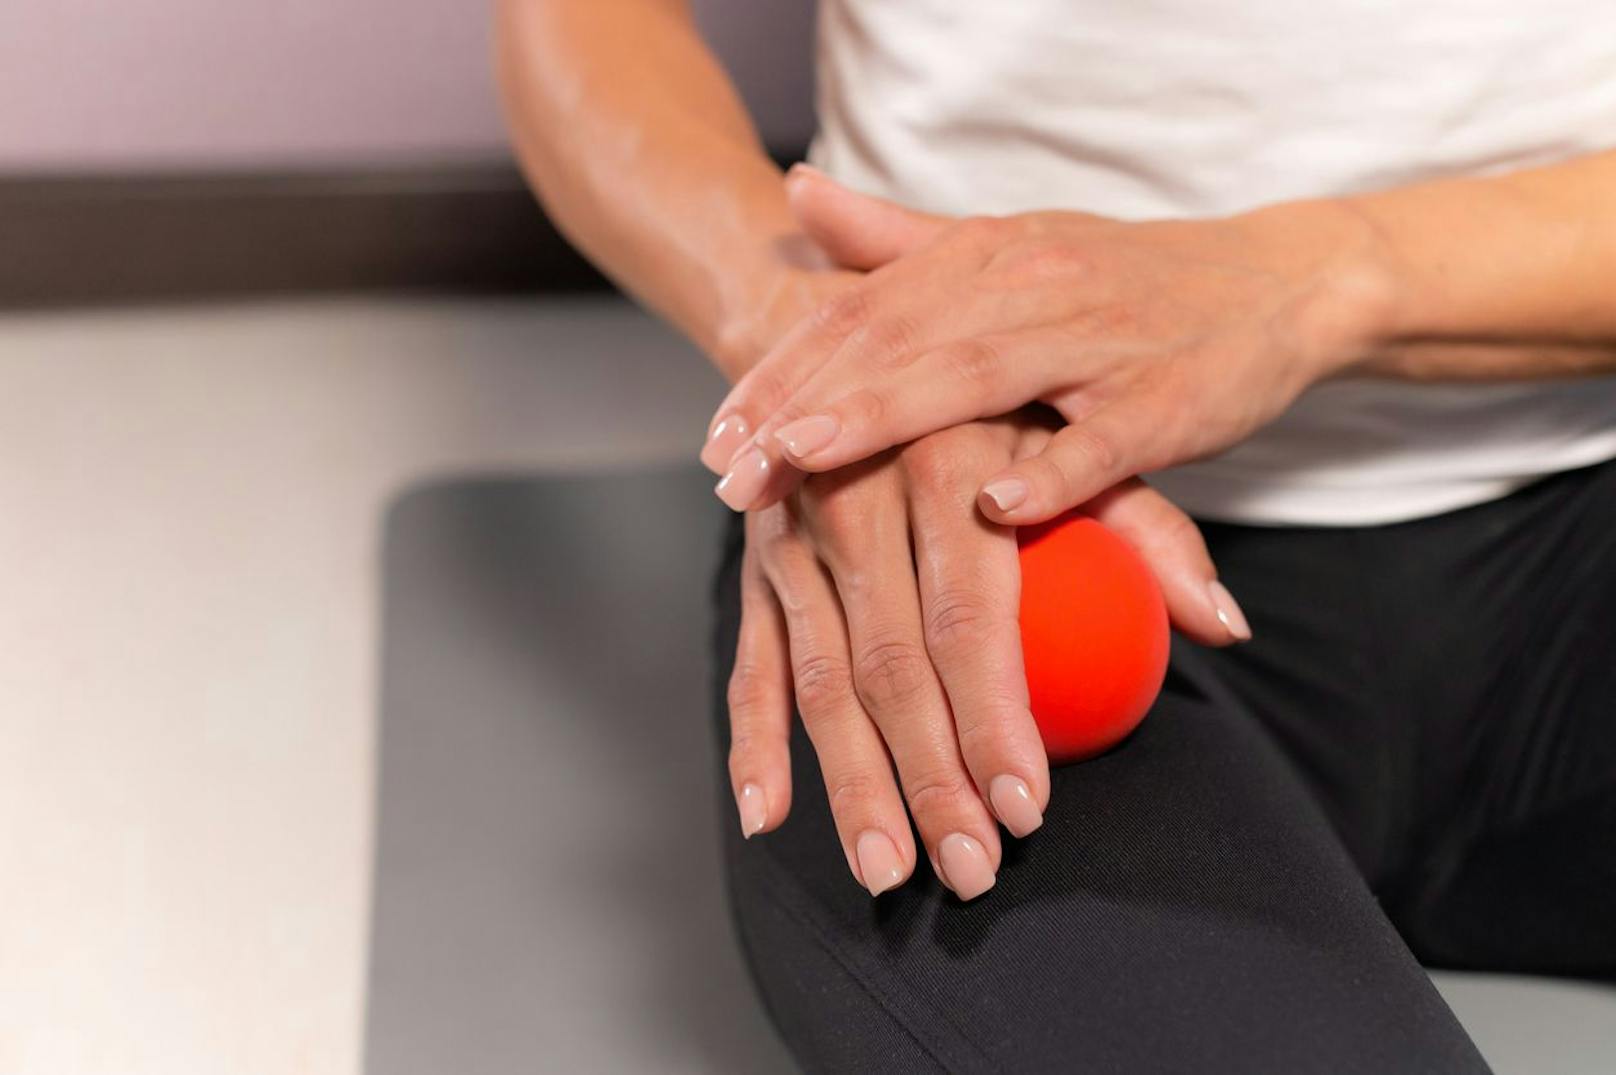 Massiere die Beinmuskeln: Dazu einen Tennisball mit an Bord nehmen. Drücke den Ball im Sitzen einfach in den Oberschenkel und rolle ihn am Bein auf und ab. Alternativ den Ball auch unter das Bein schieben und mit ihm herumwackeln.